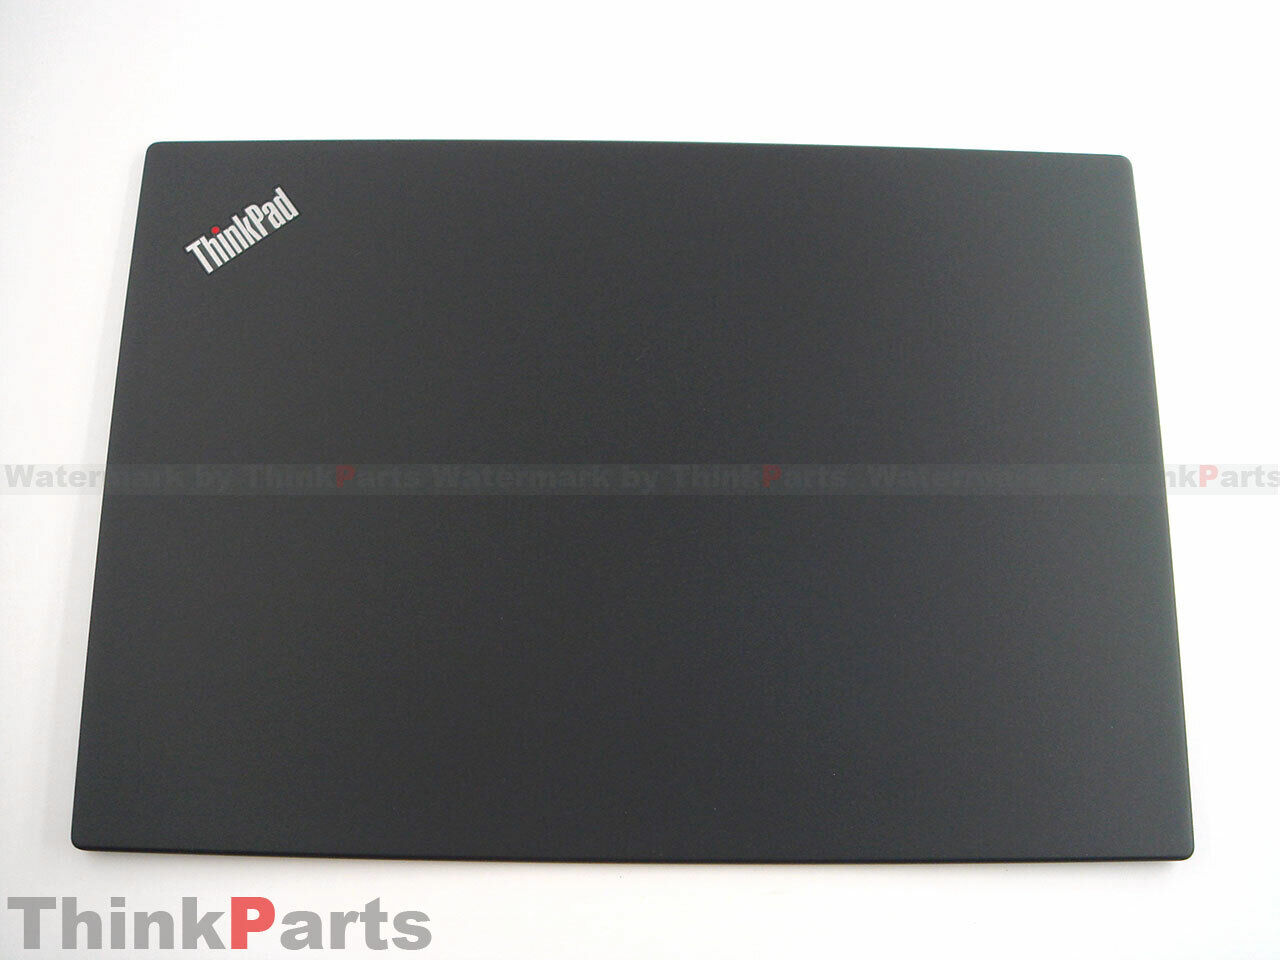 New/Orig Lenovo ThinkPad X13 Gen 1 (20T2,20T3) Lcd back cover 02HL007 02HL006